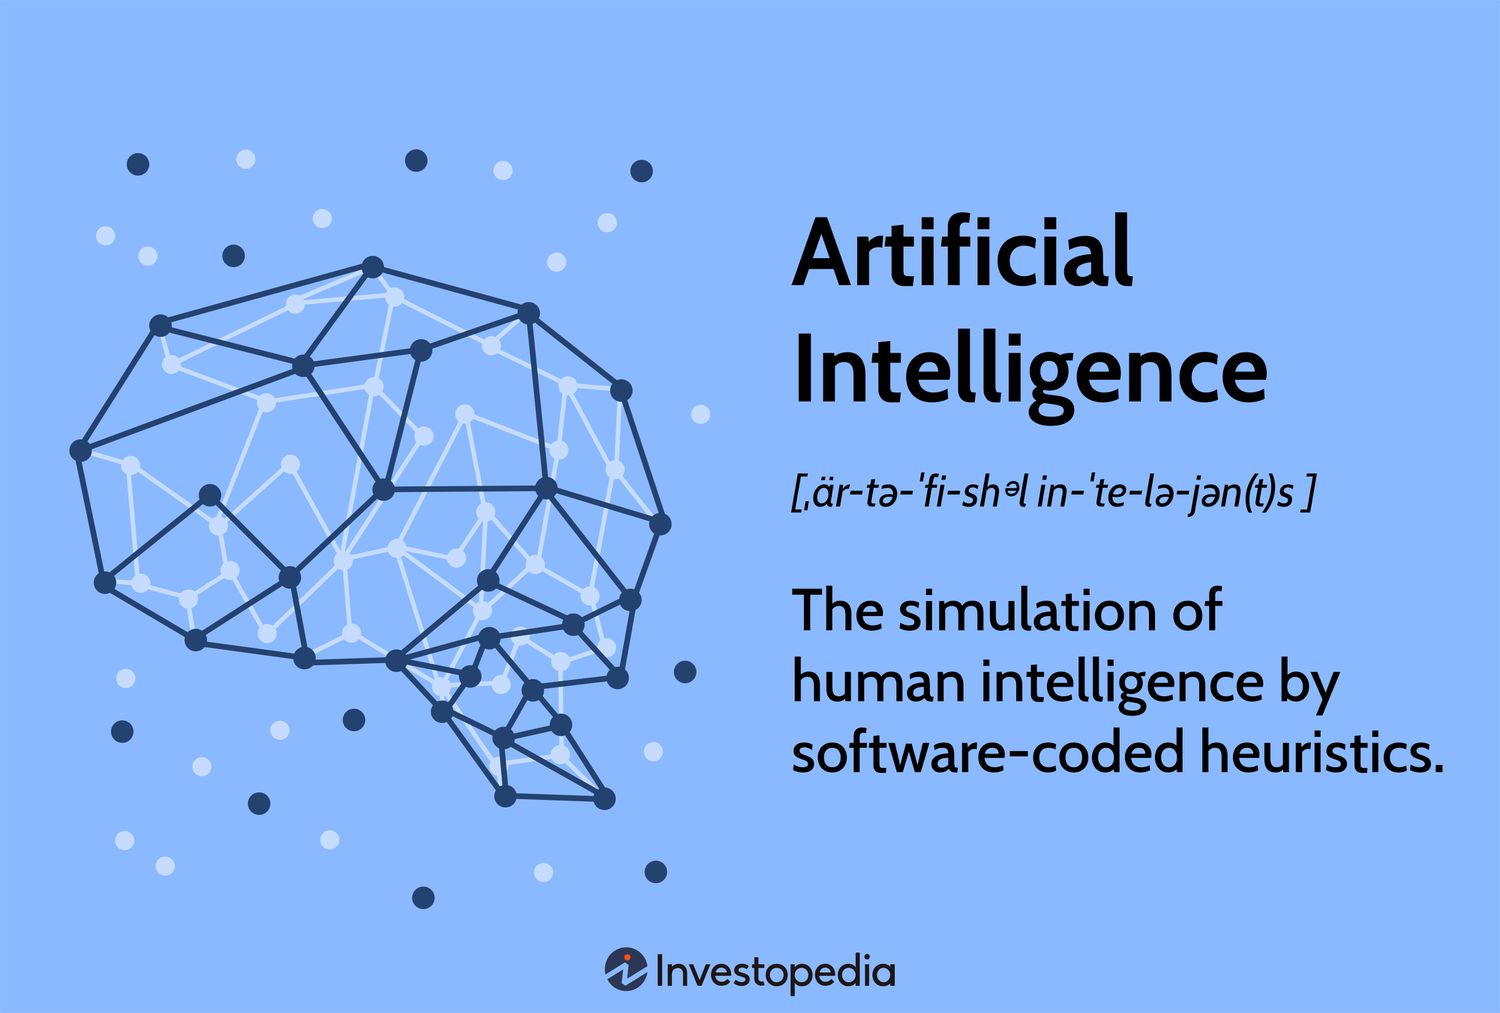 这张图片展示了代表人工智能的线条和节点构成的脑图形象，旁边有“Artificial Intelligence”及其定义和发音指南。